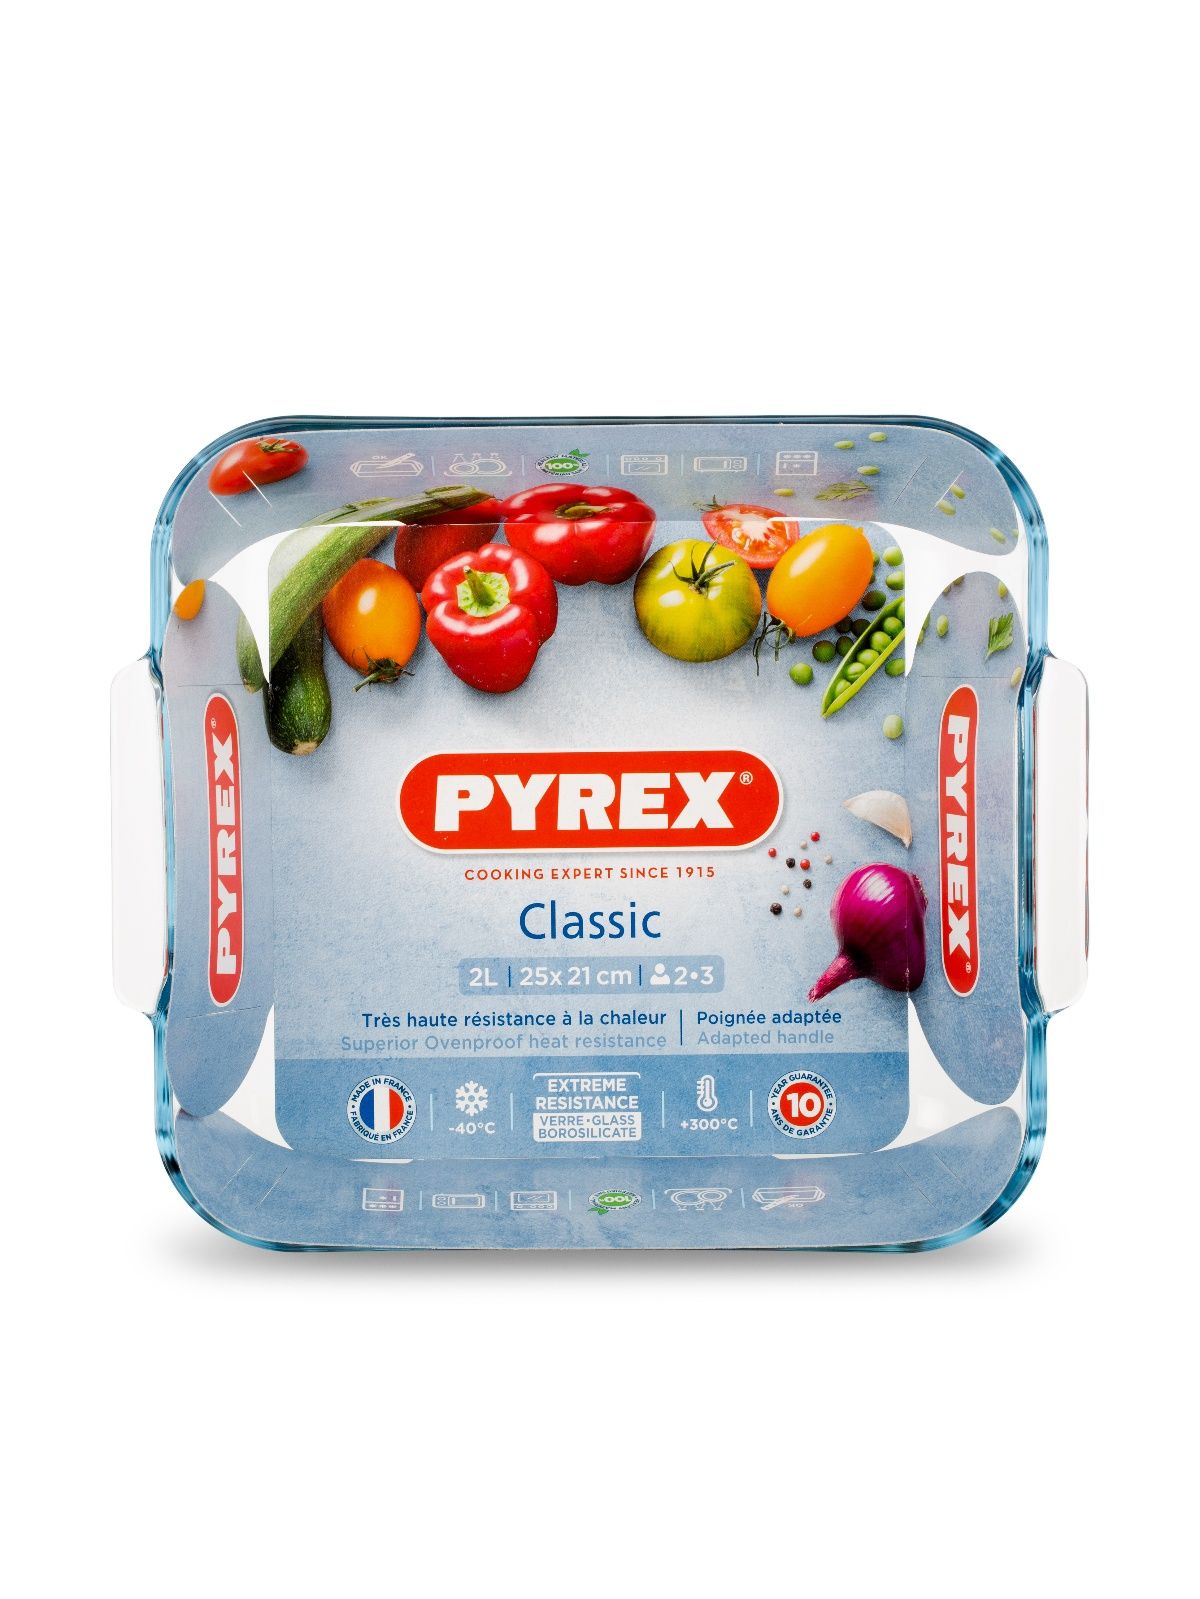 блюдо для запекания и выпечки smart cooking 40x28см прямоугольное pyrex 239b000 5046 Блюдо для запекания и выпечки SMART COOKING 25x21см квадратное PYREX 220B000/7046